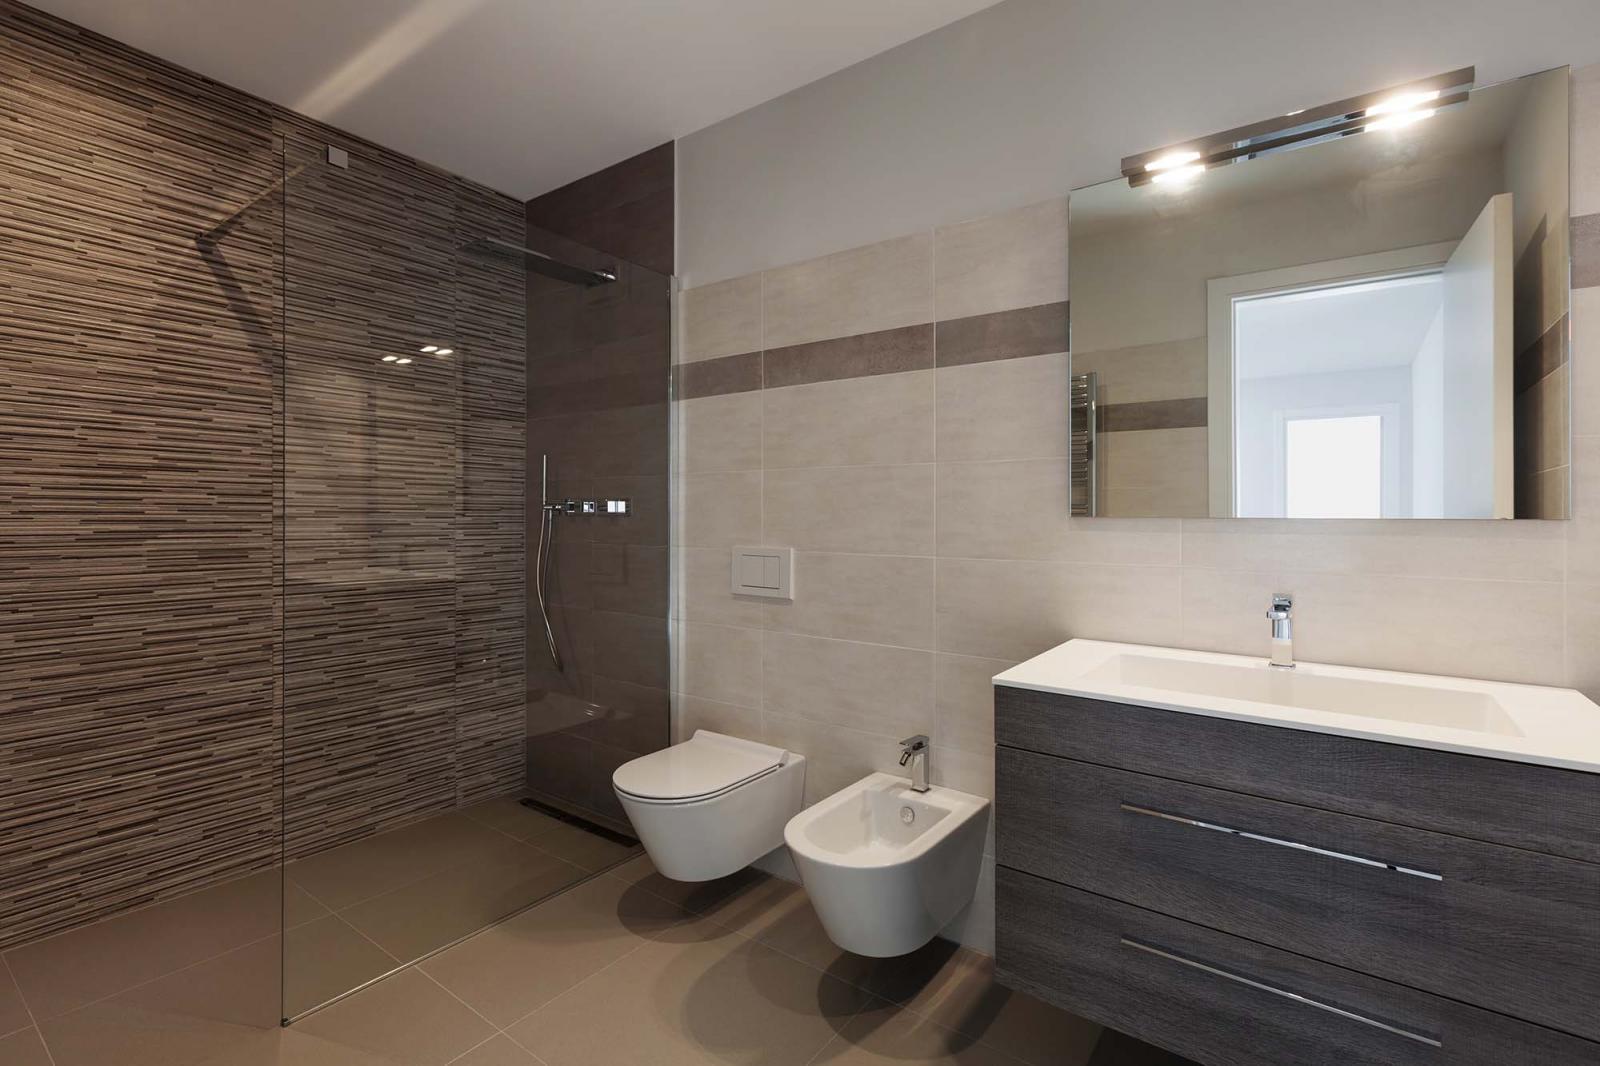 Nhà vệ sinh màu trắng xen kẽ mảng tường nâu, gương treo tường, vách kính phân riêng phòng tắm.